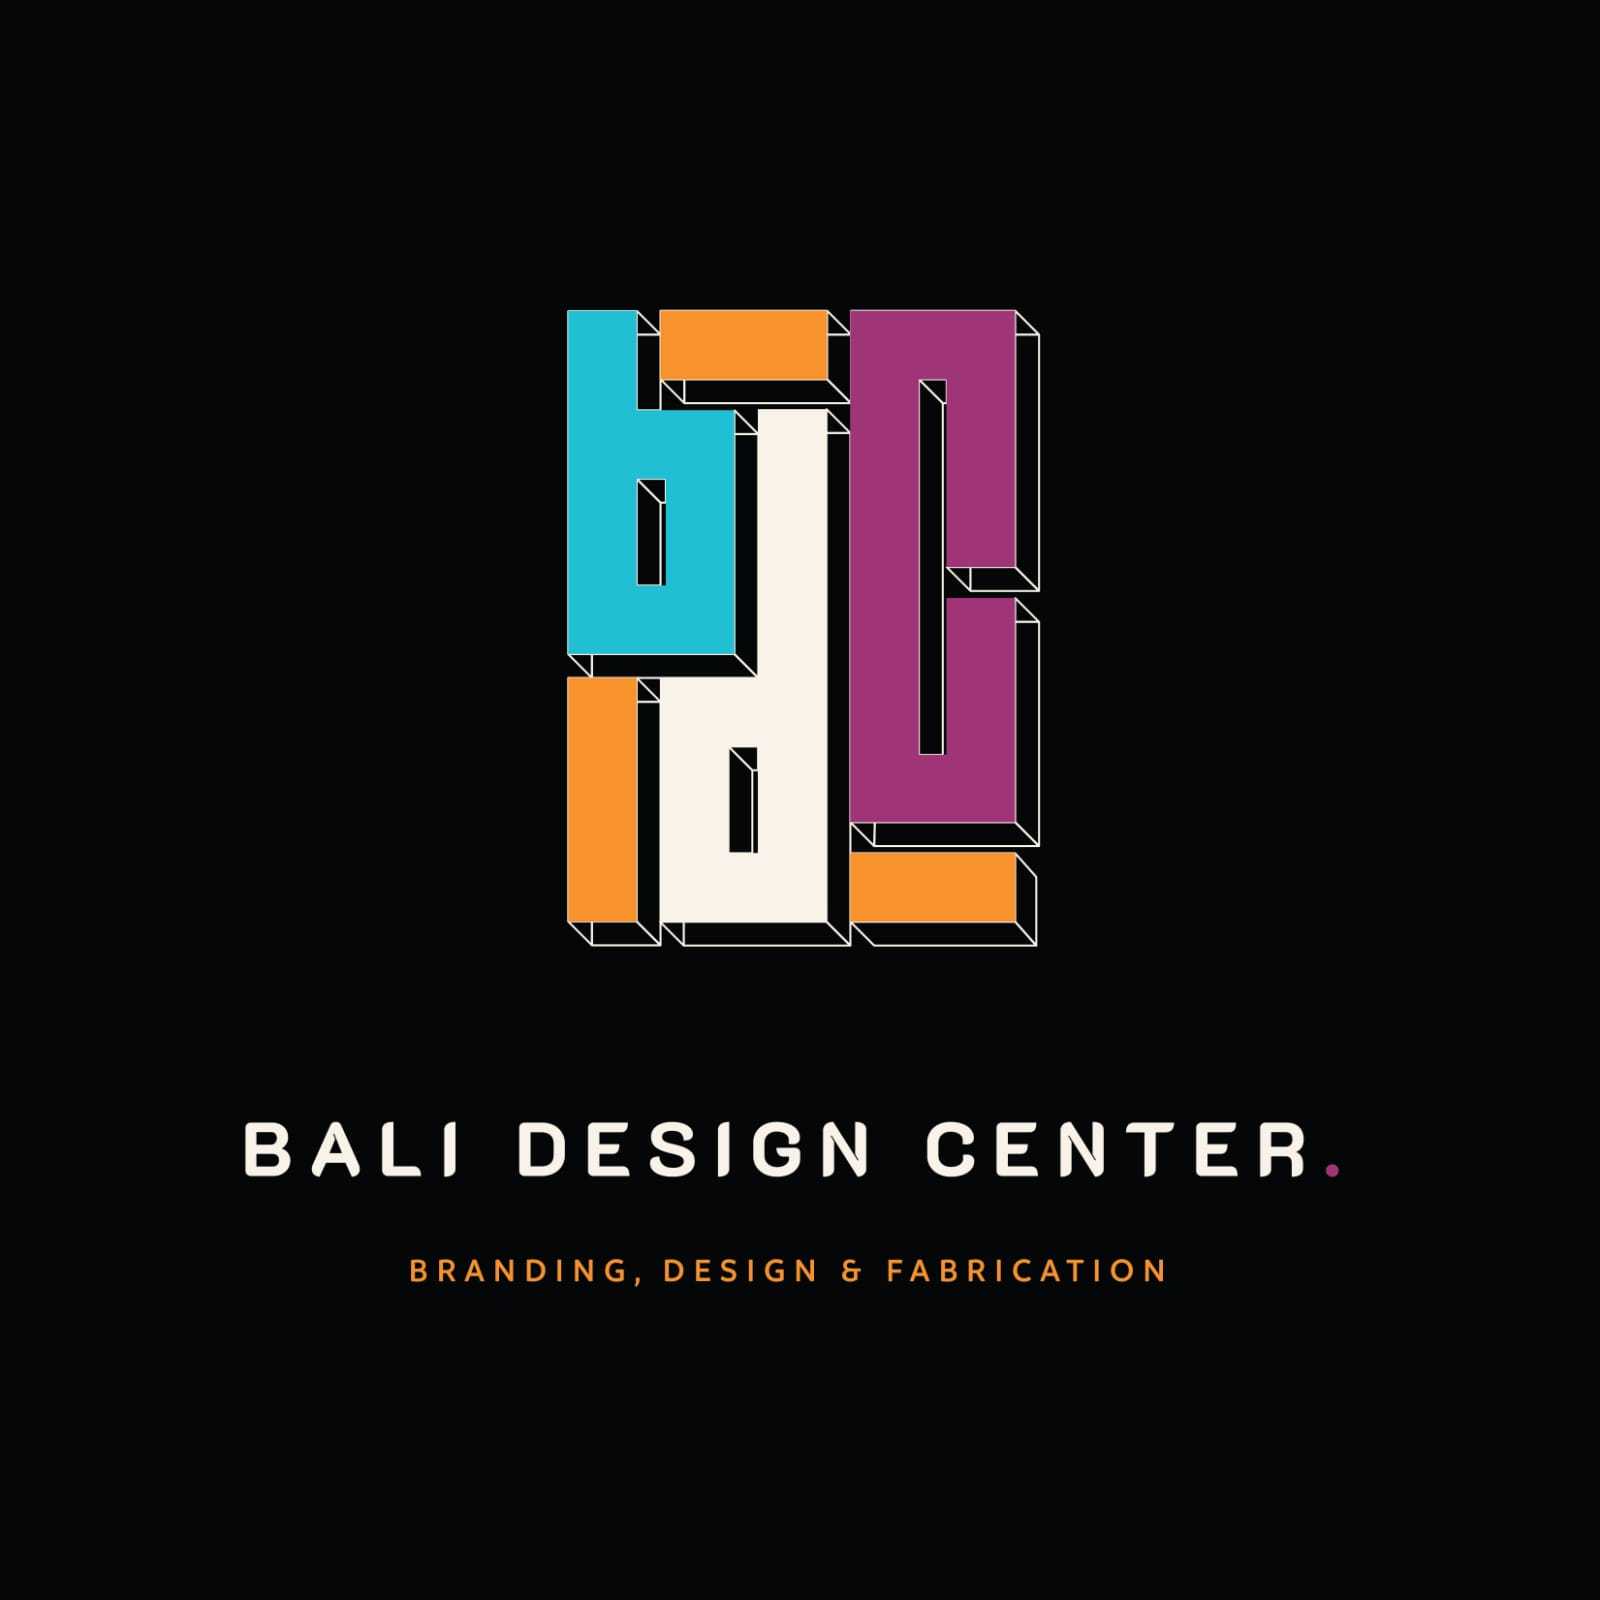 The Bali Design Center